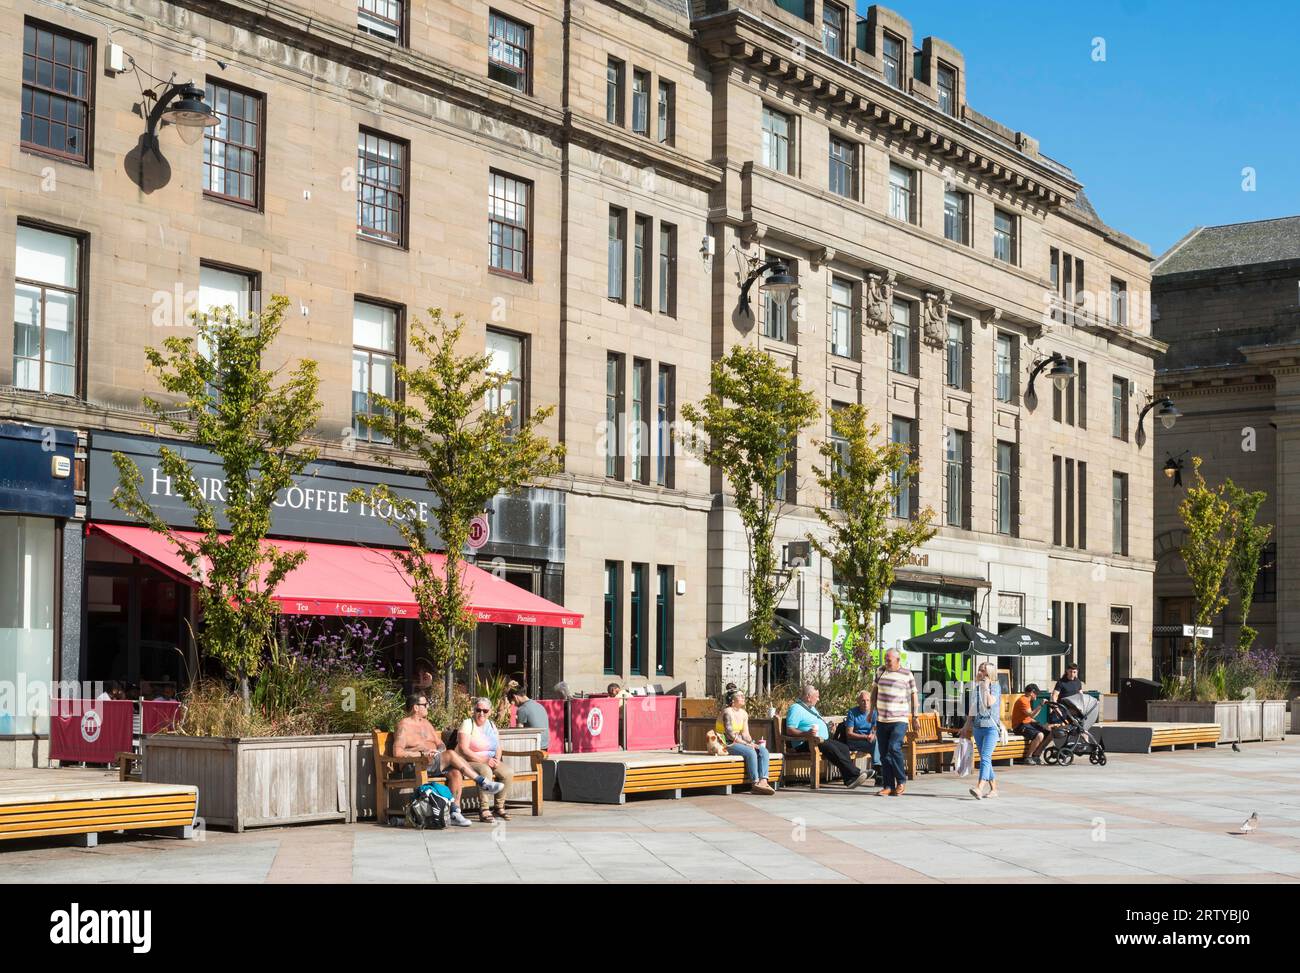 Menschen, die in der Sonne sitzen. City Square, Dundee, Schottland, Großbritannien Stockfoto